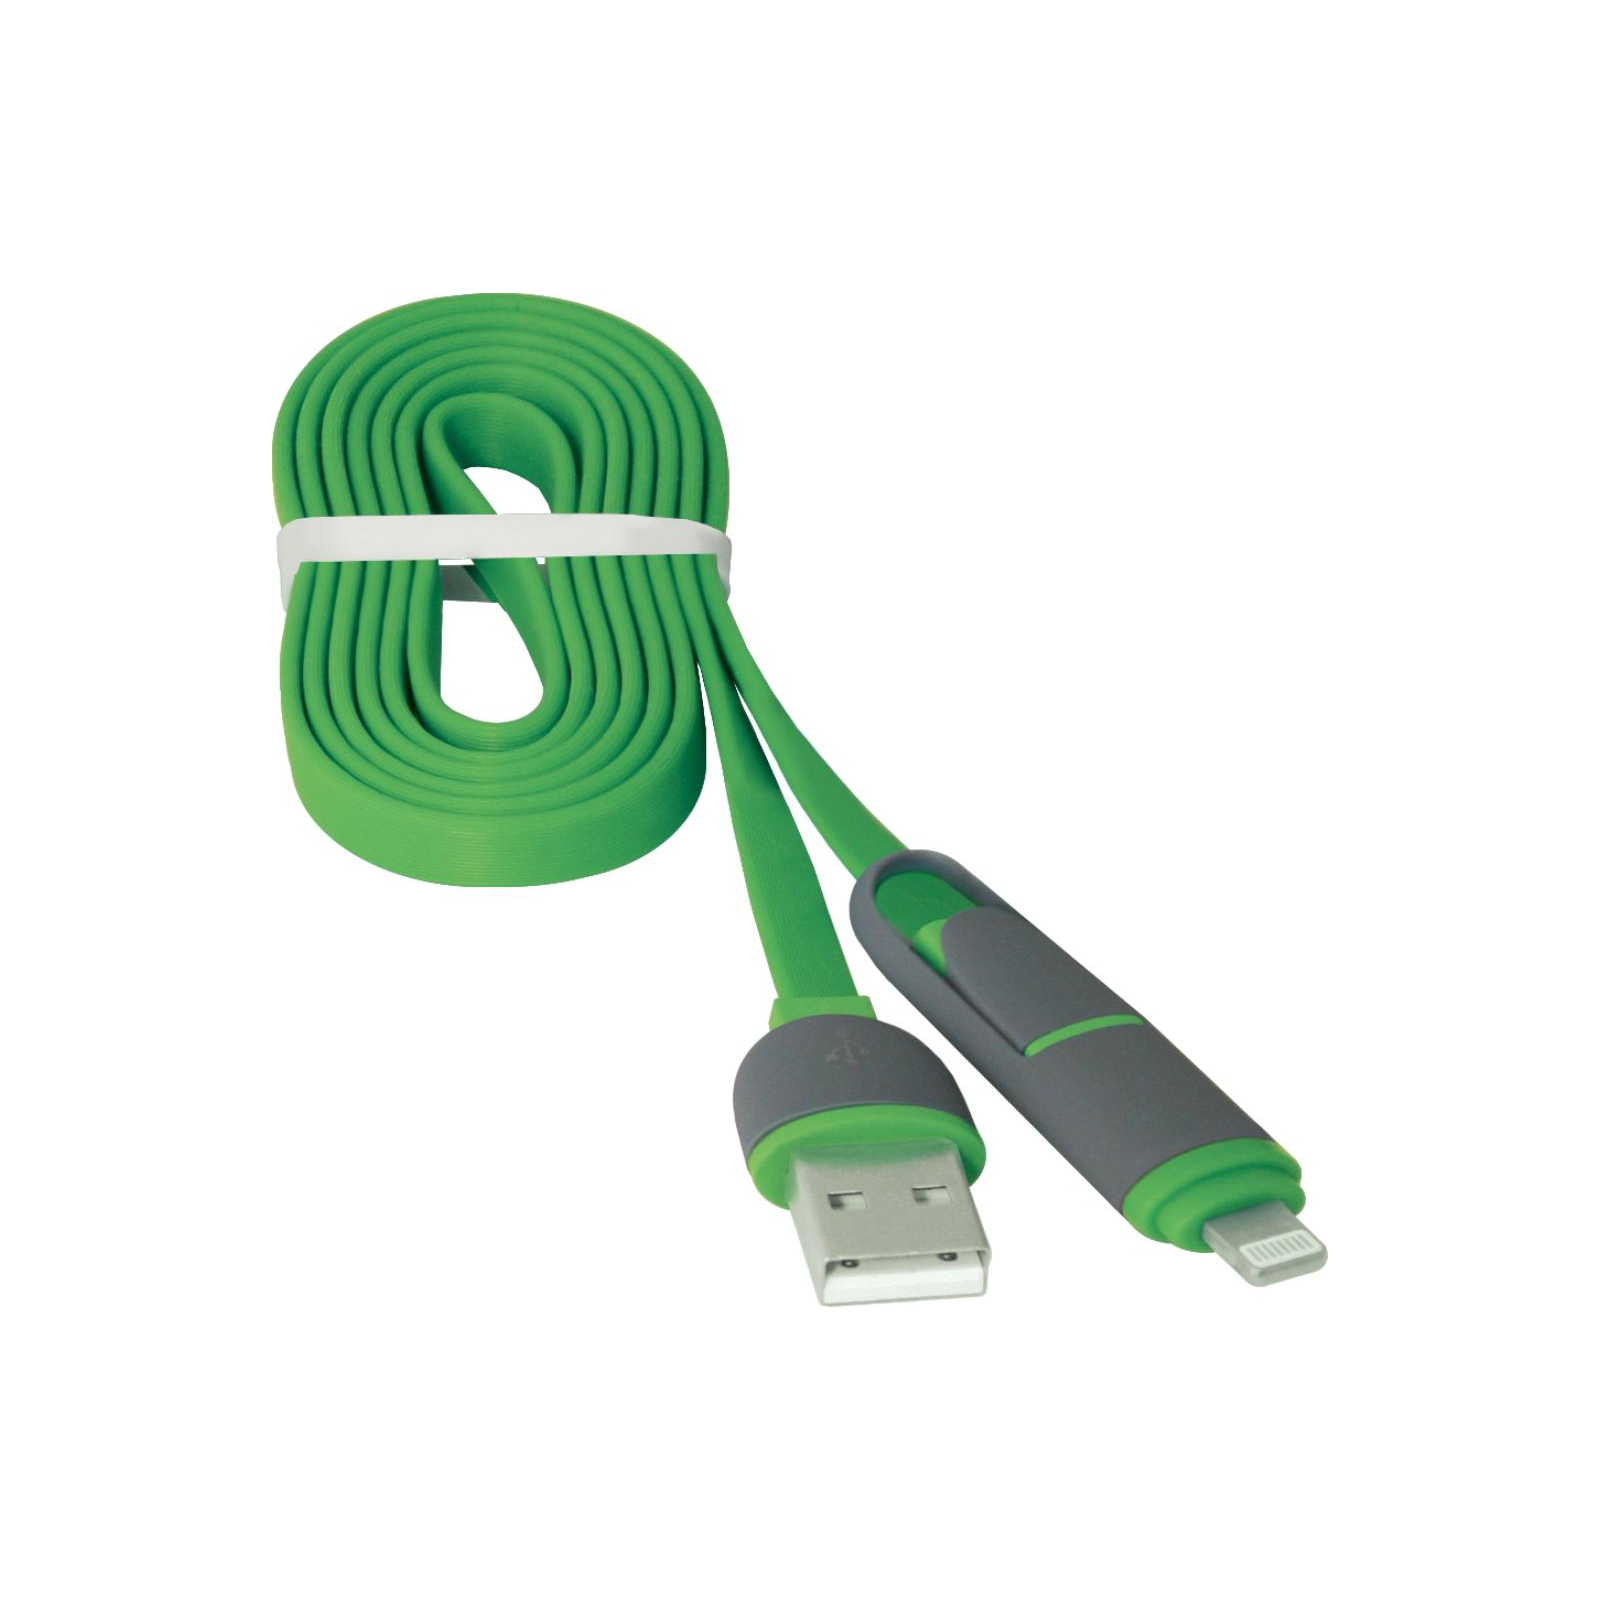 Дата кабель USB10-03BP USB - Micro USB/Lightning, blue, 1m Defender (87487) изображение 4